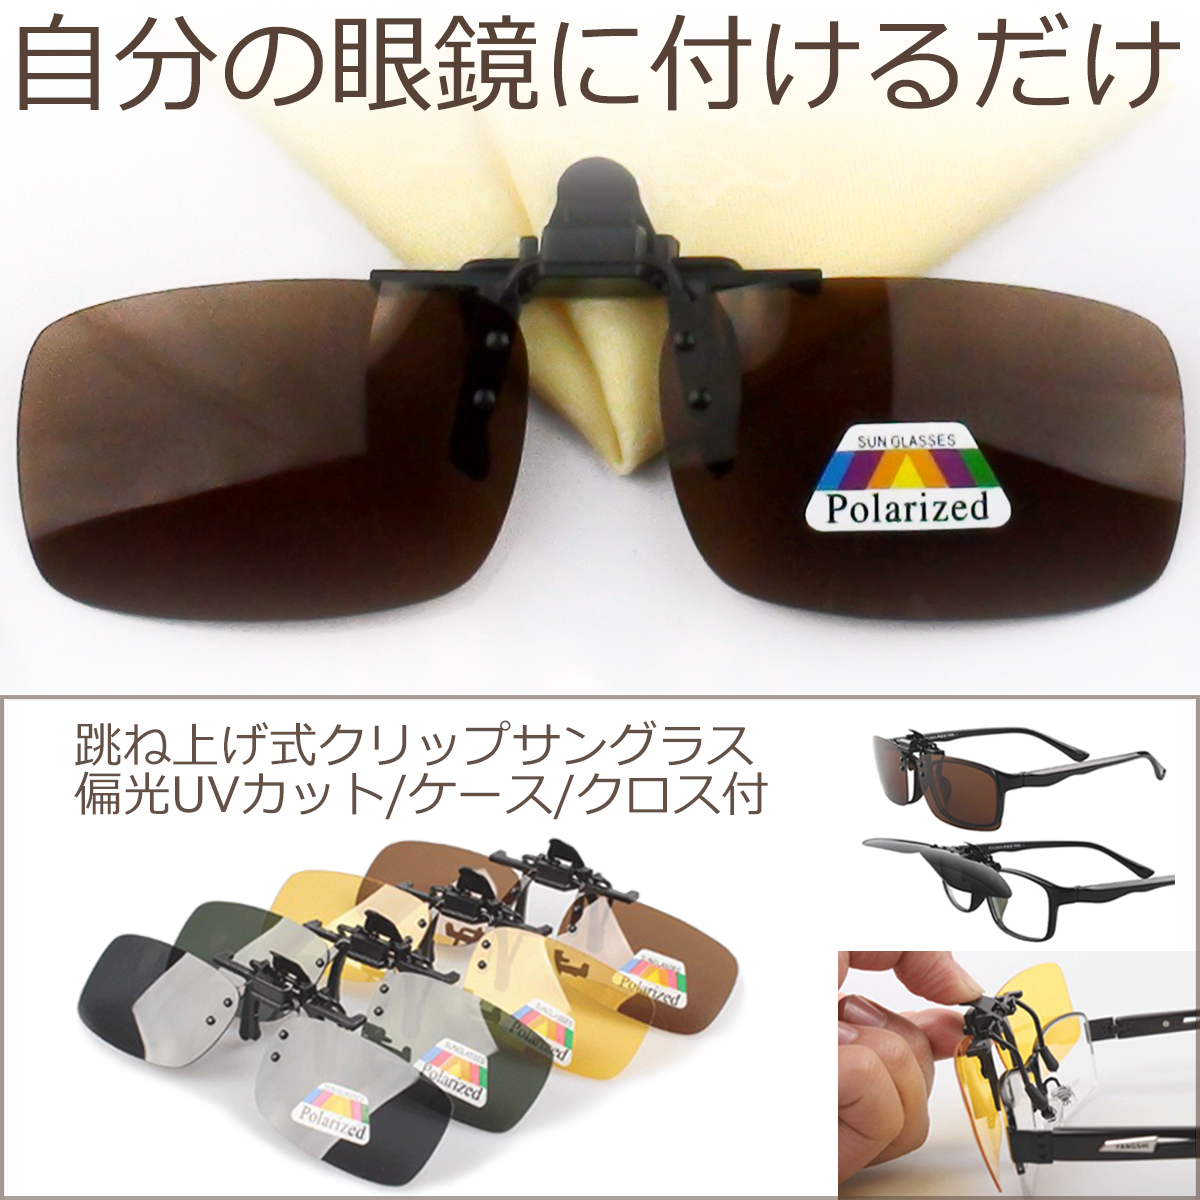 クリップオンサングラス 偏光 UVカット 跳ね上げ式 メンズ レディース クリップ式 サングラス メガネ かけたまま 眼鏡の上 黄色 緑 茶色 グレー  収納 ケース付き :ClpOnSnGls:アリージェム 通販 